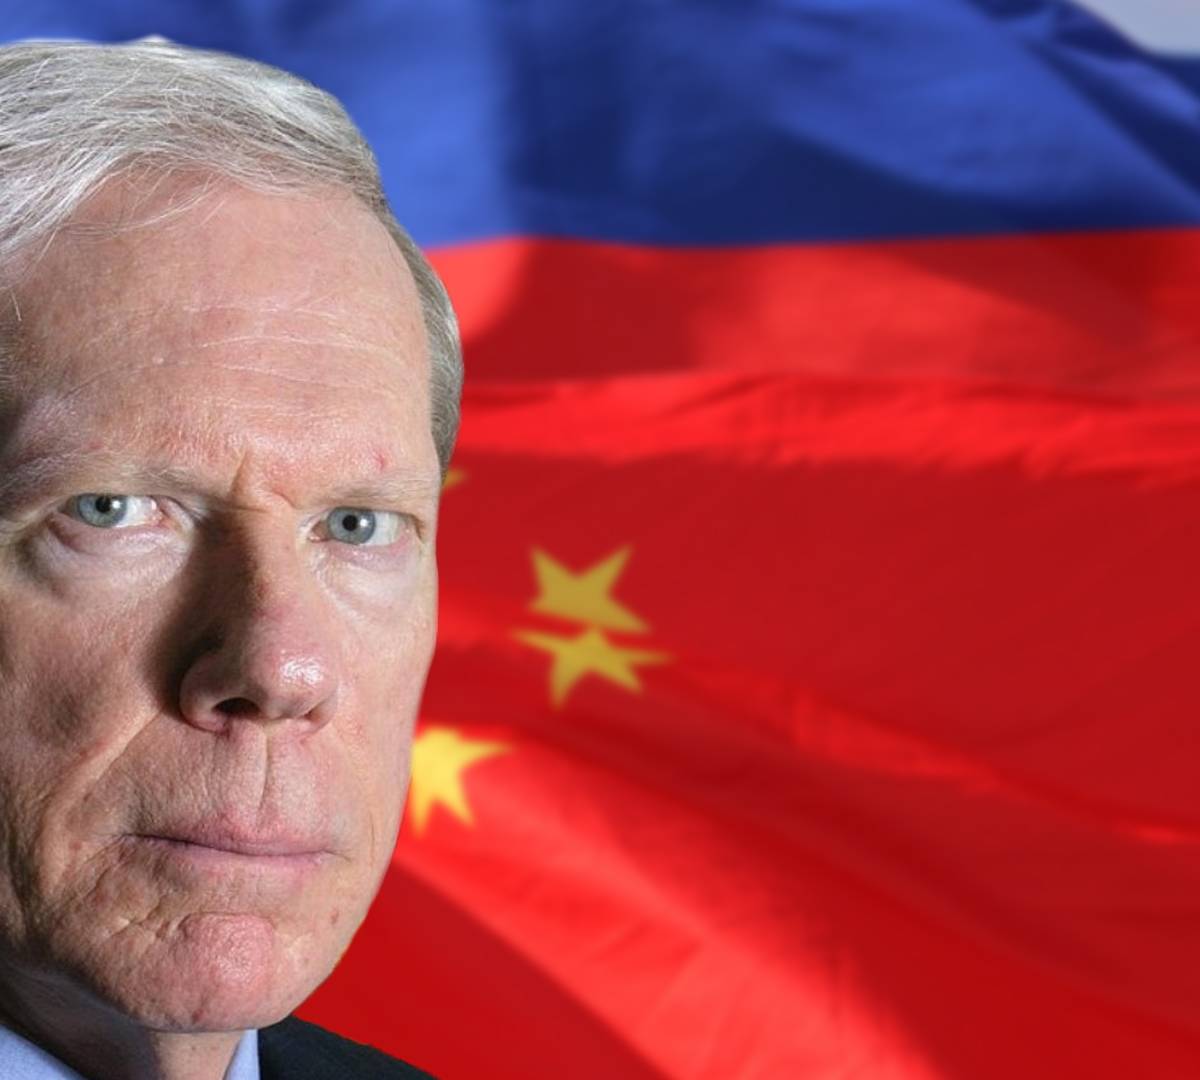 Правительства России и Китая оказались импотентами из-за либералов